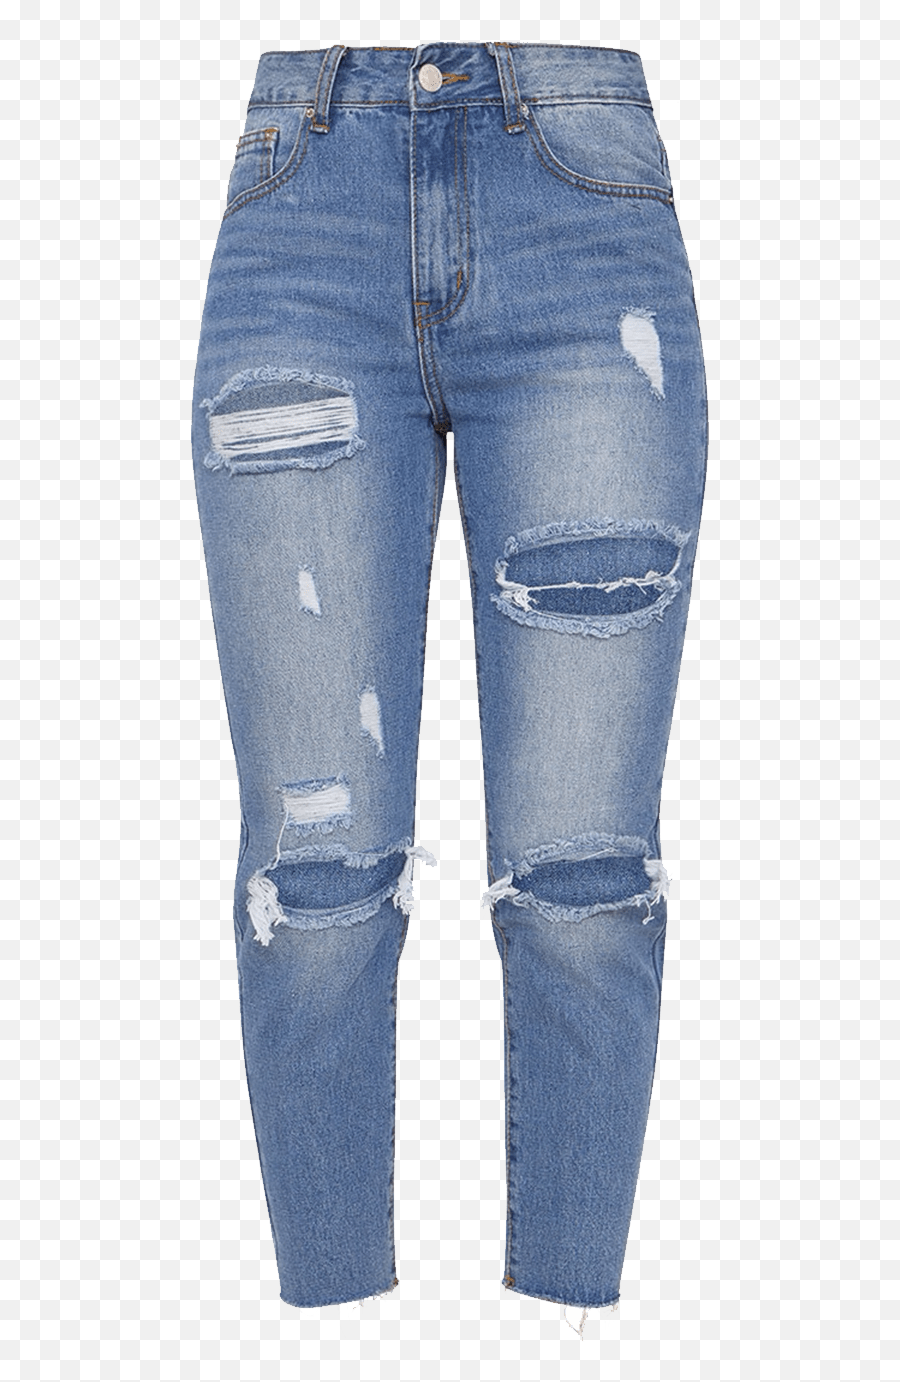 Jeans Png - Transparent Background Jeans Emoji,Jeans Transparent Background